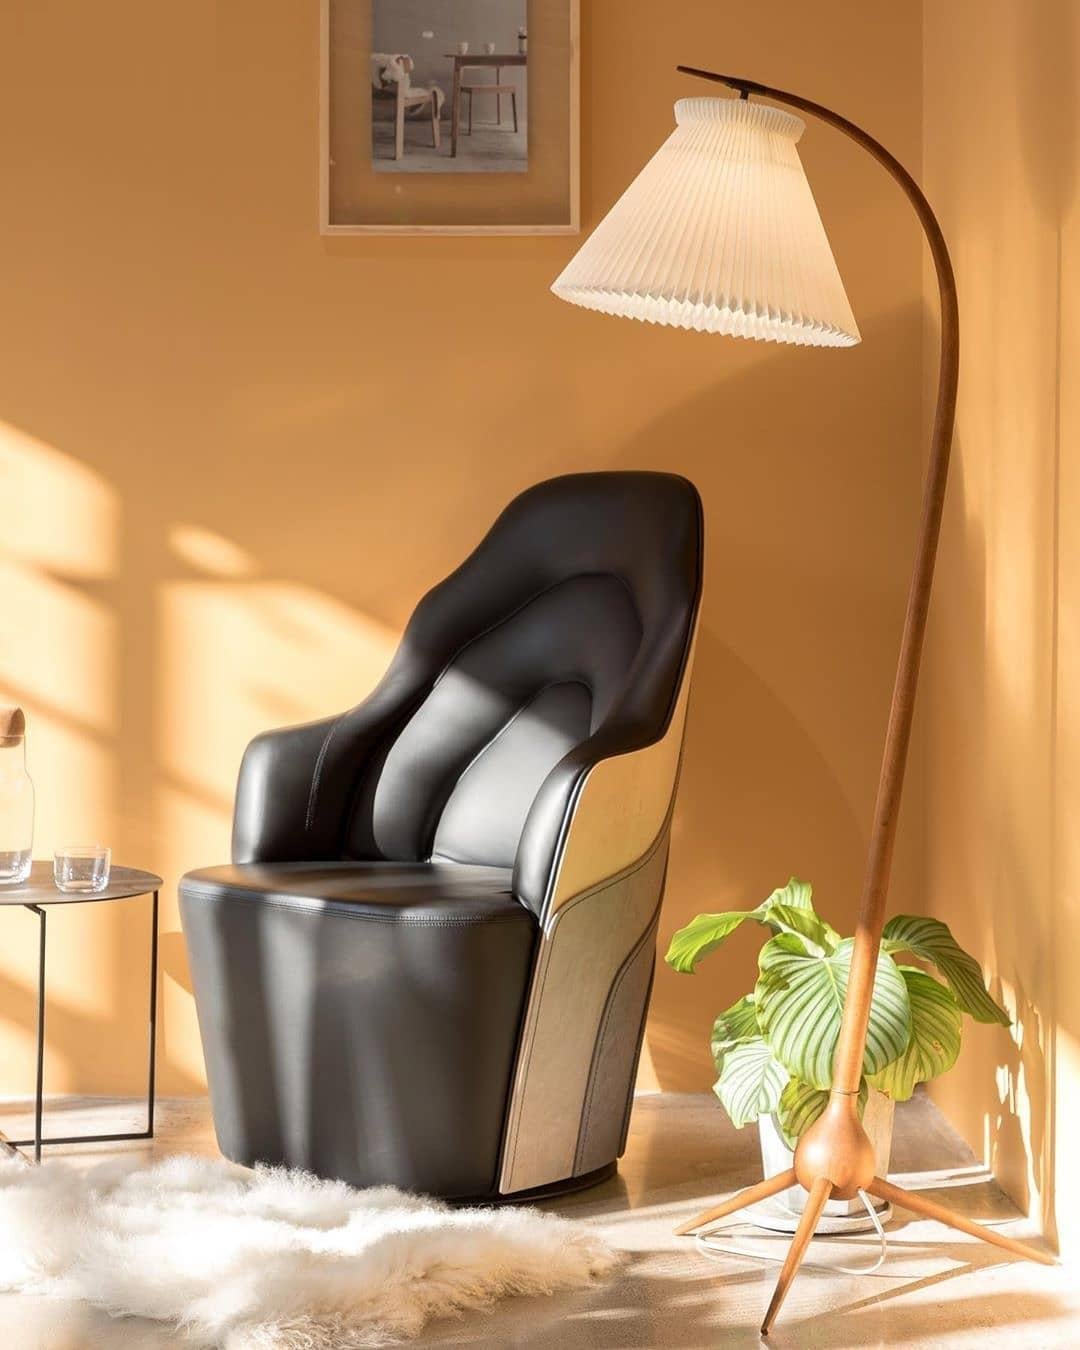  Couture-Sessel aus abgenutzter Birke mit schwarzer Lederrückenlehne  Gepolstert  (Spanisch)